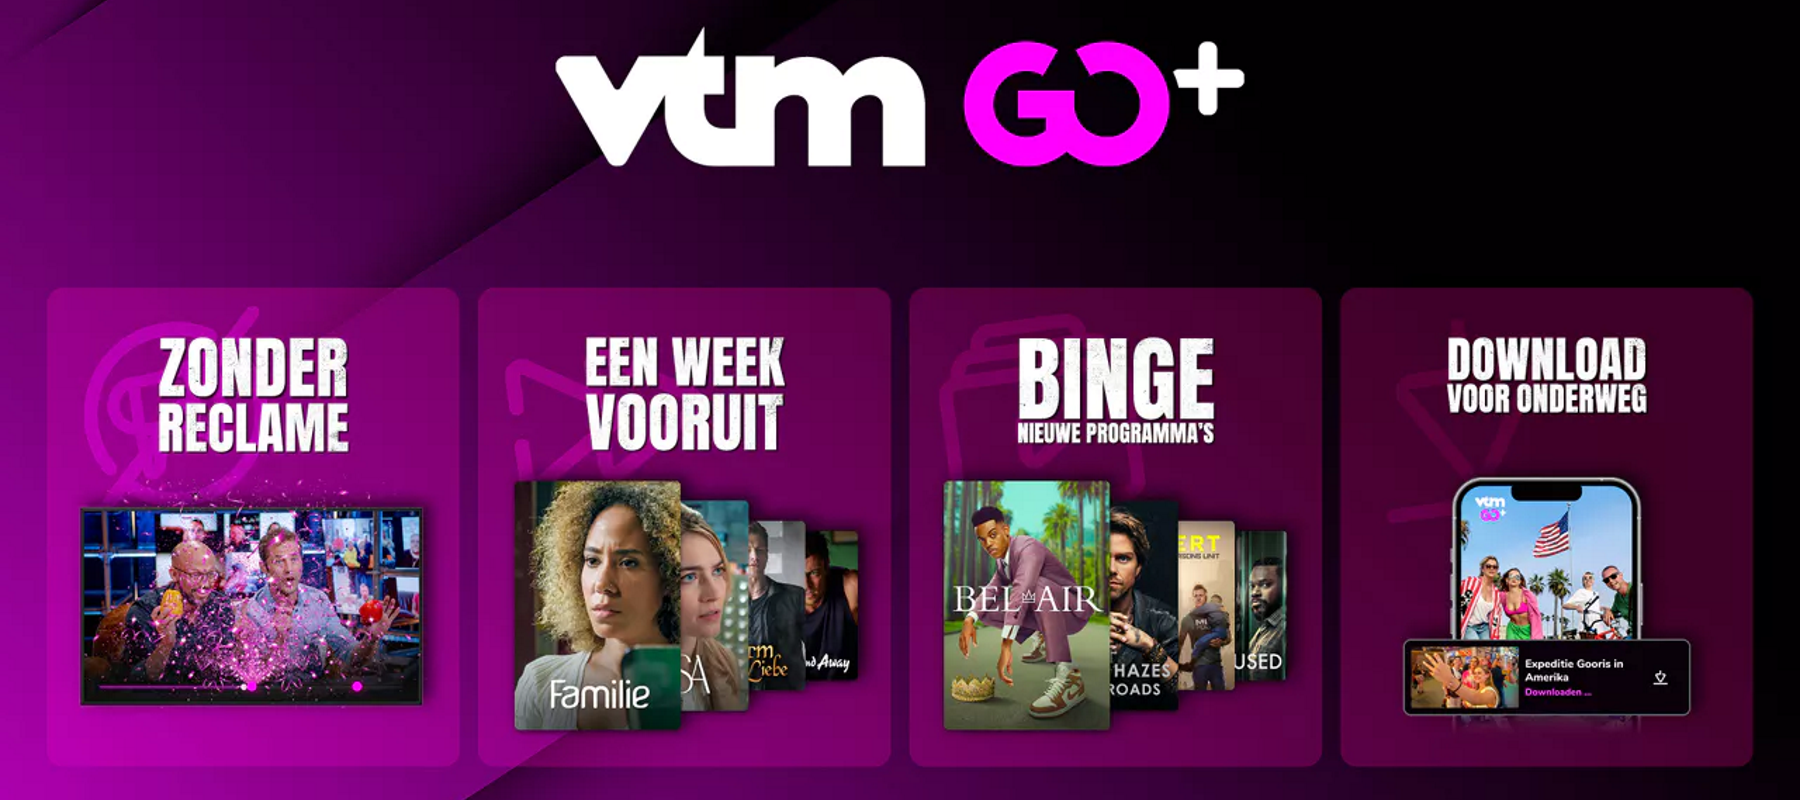 DPG Media lanceert VTM Go+: abonnement zonder reclame